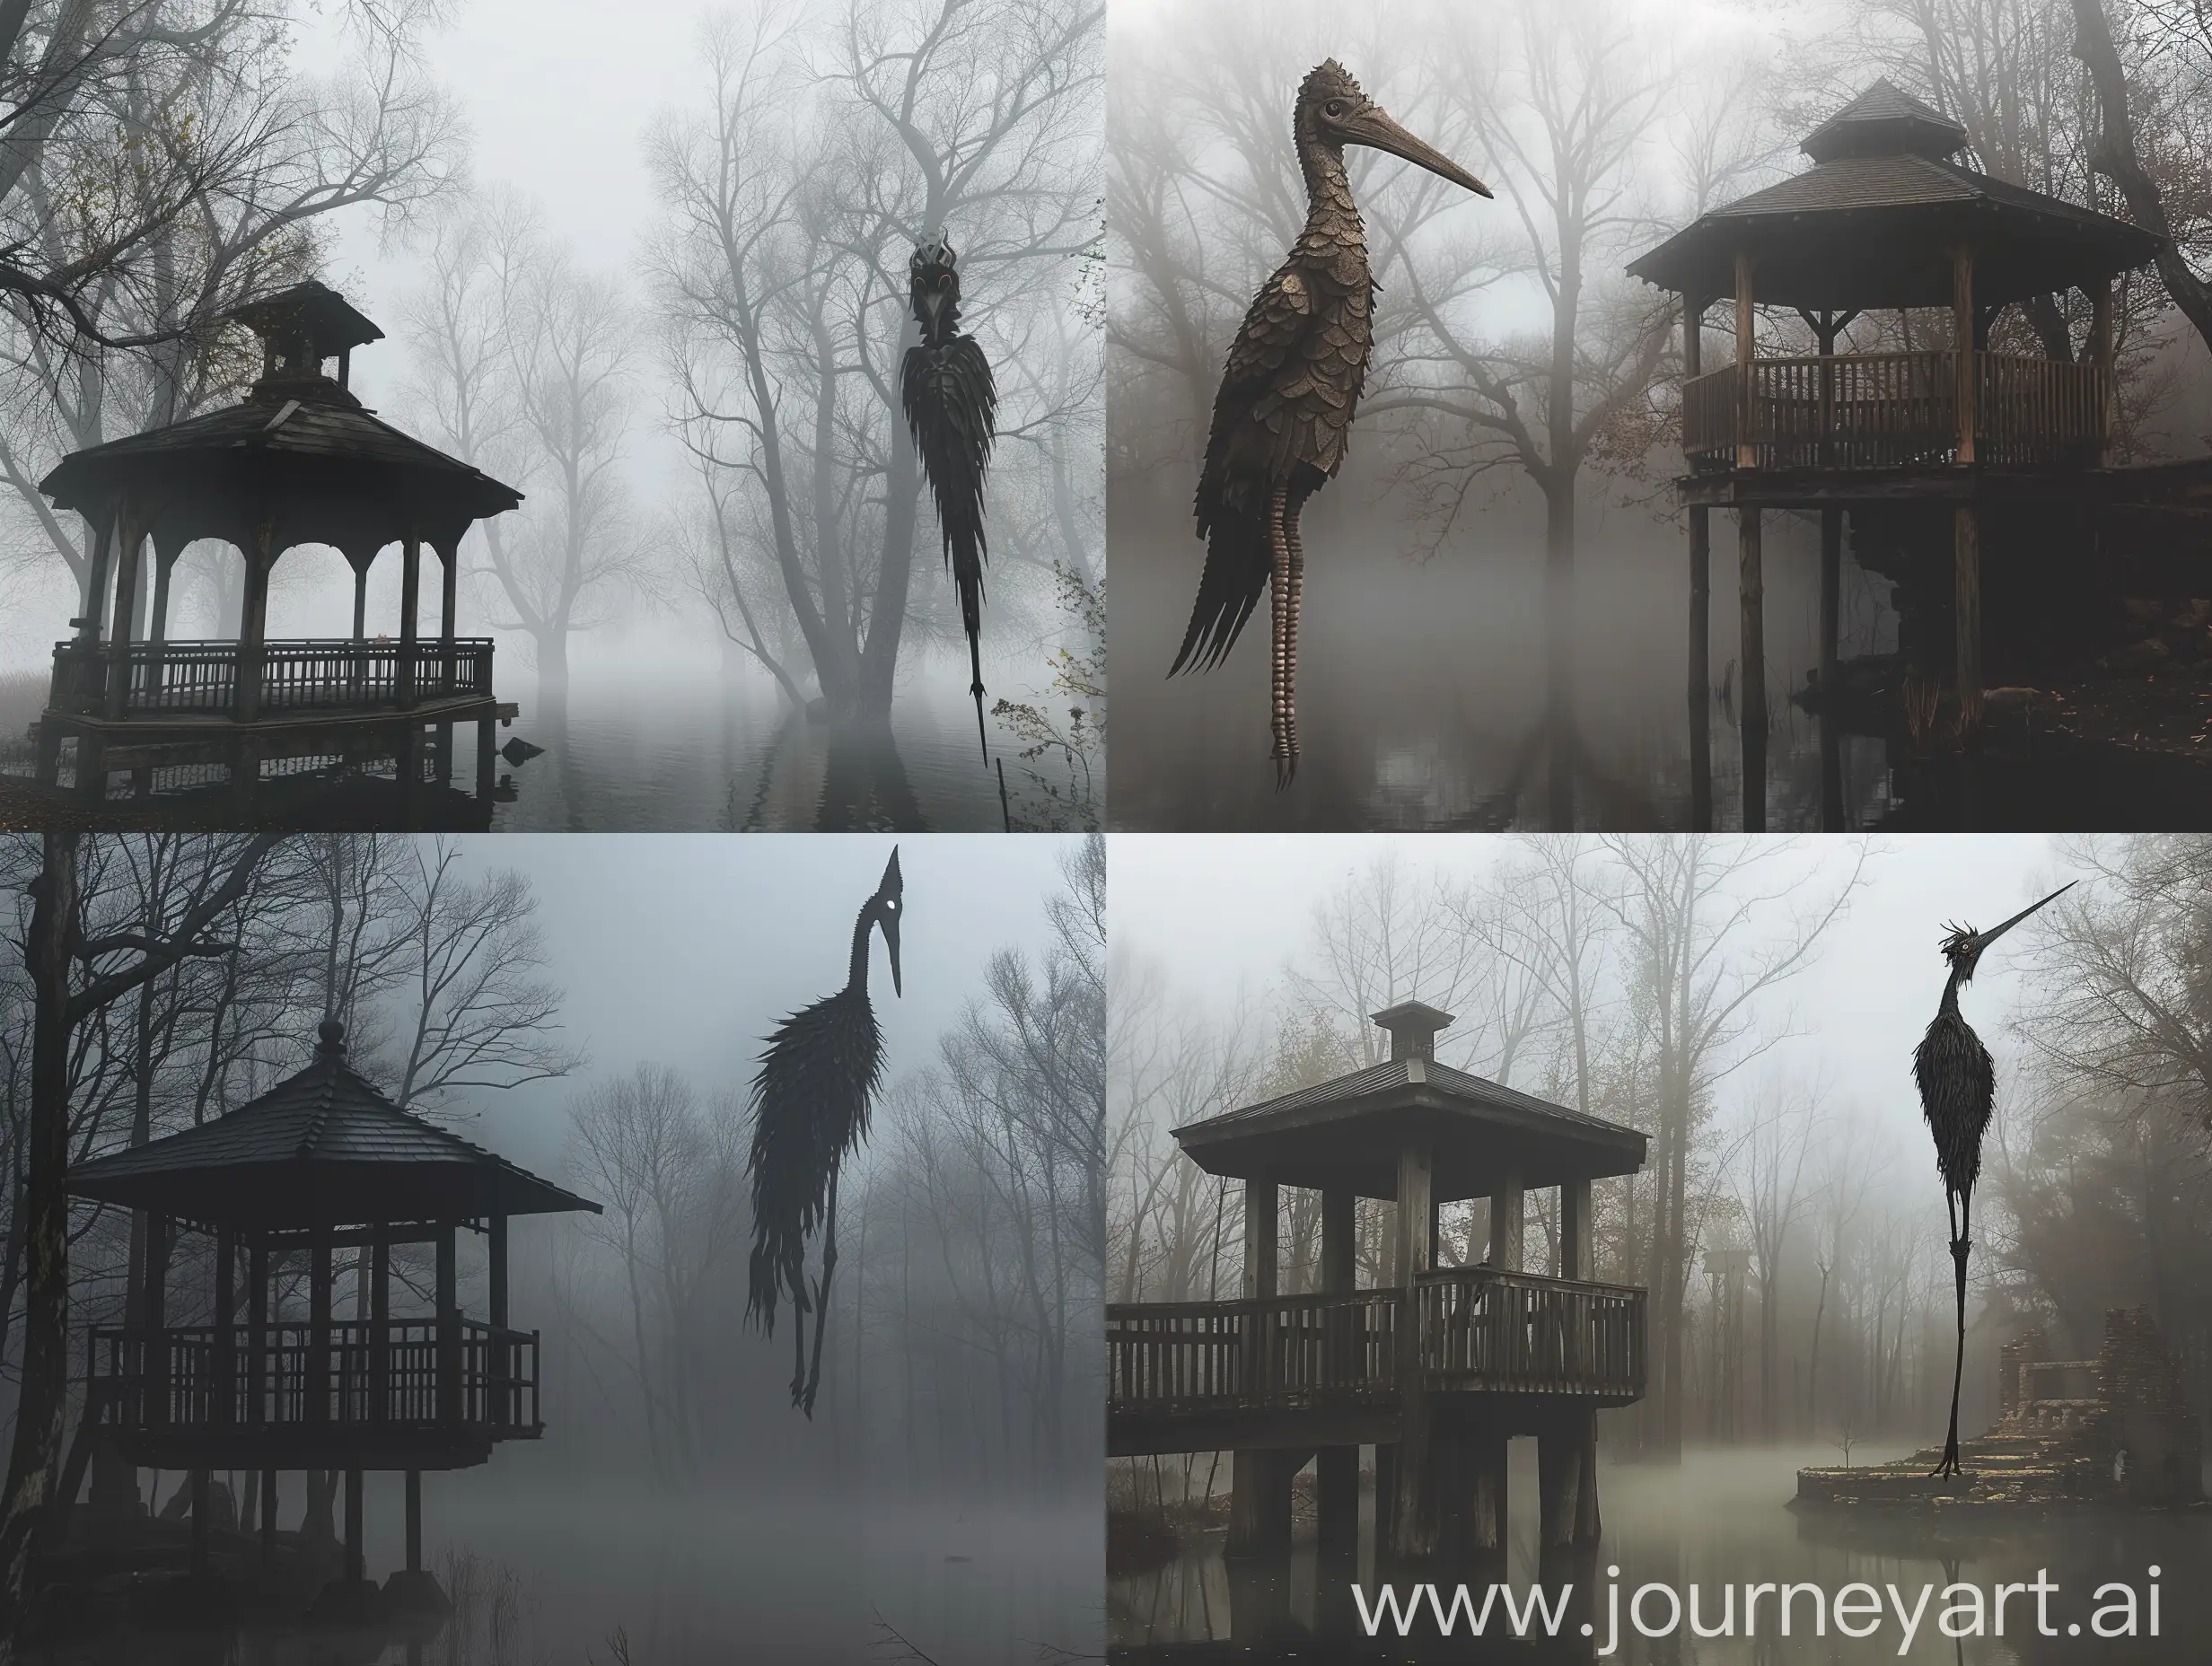 Ethereal-Yokai-Guardian-in-Misty-Forest-Scene